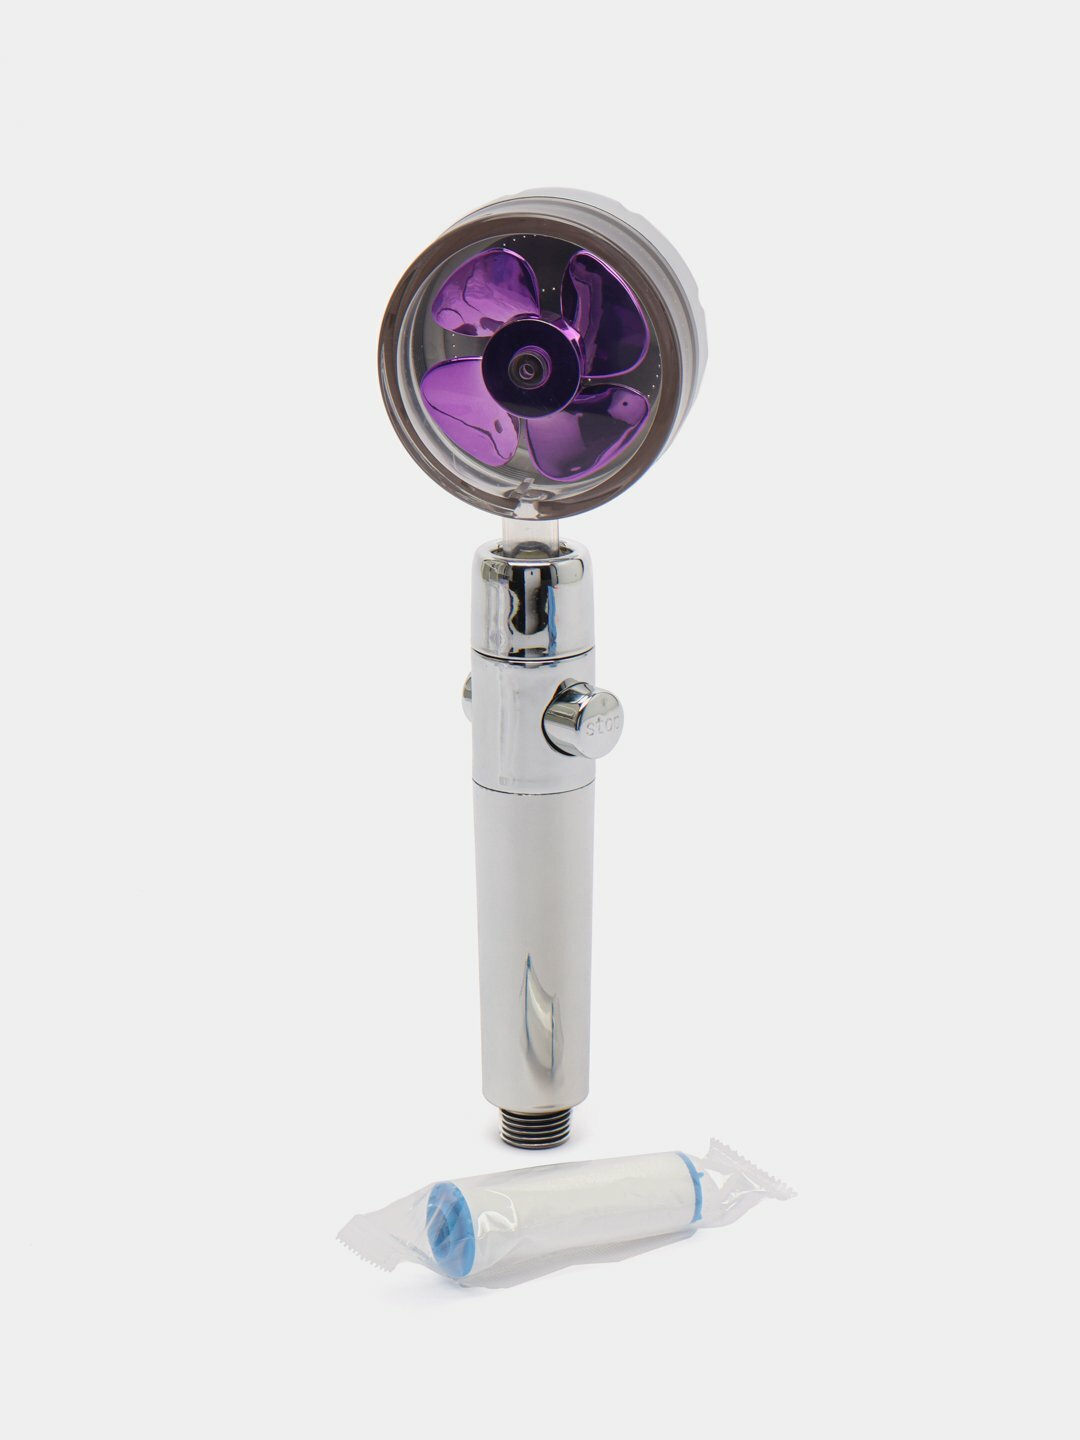 Турбодуш / Лейка для душа с вентилятором 360 / турбо насадка для ванной с фильтром Цвет Фиолетовый